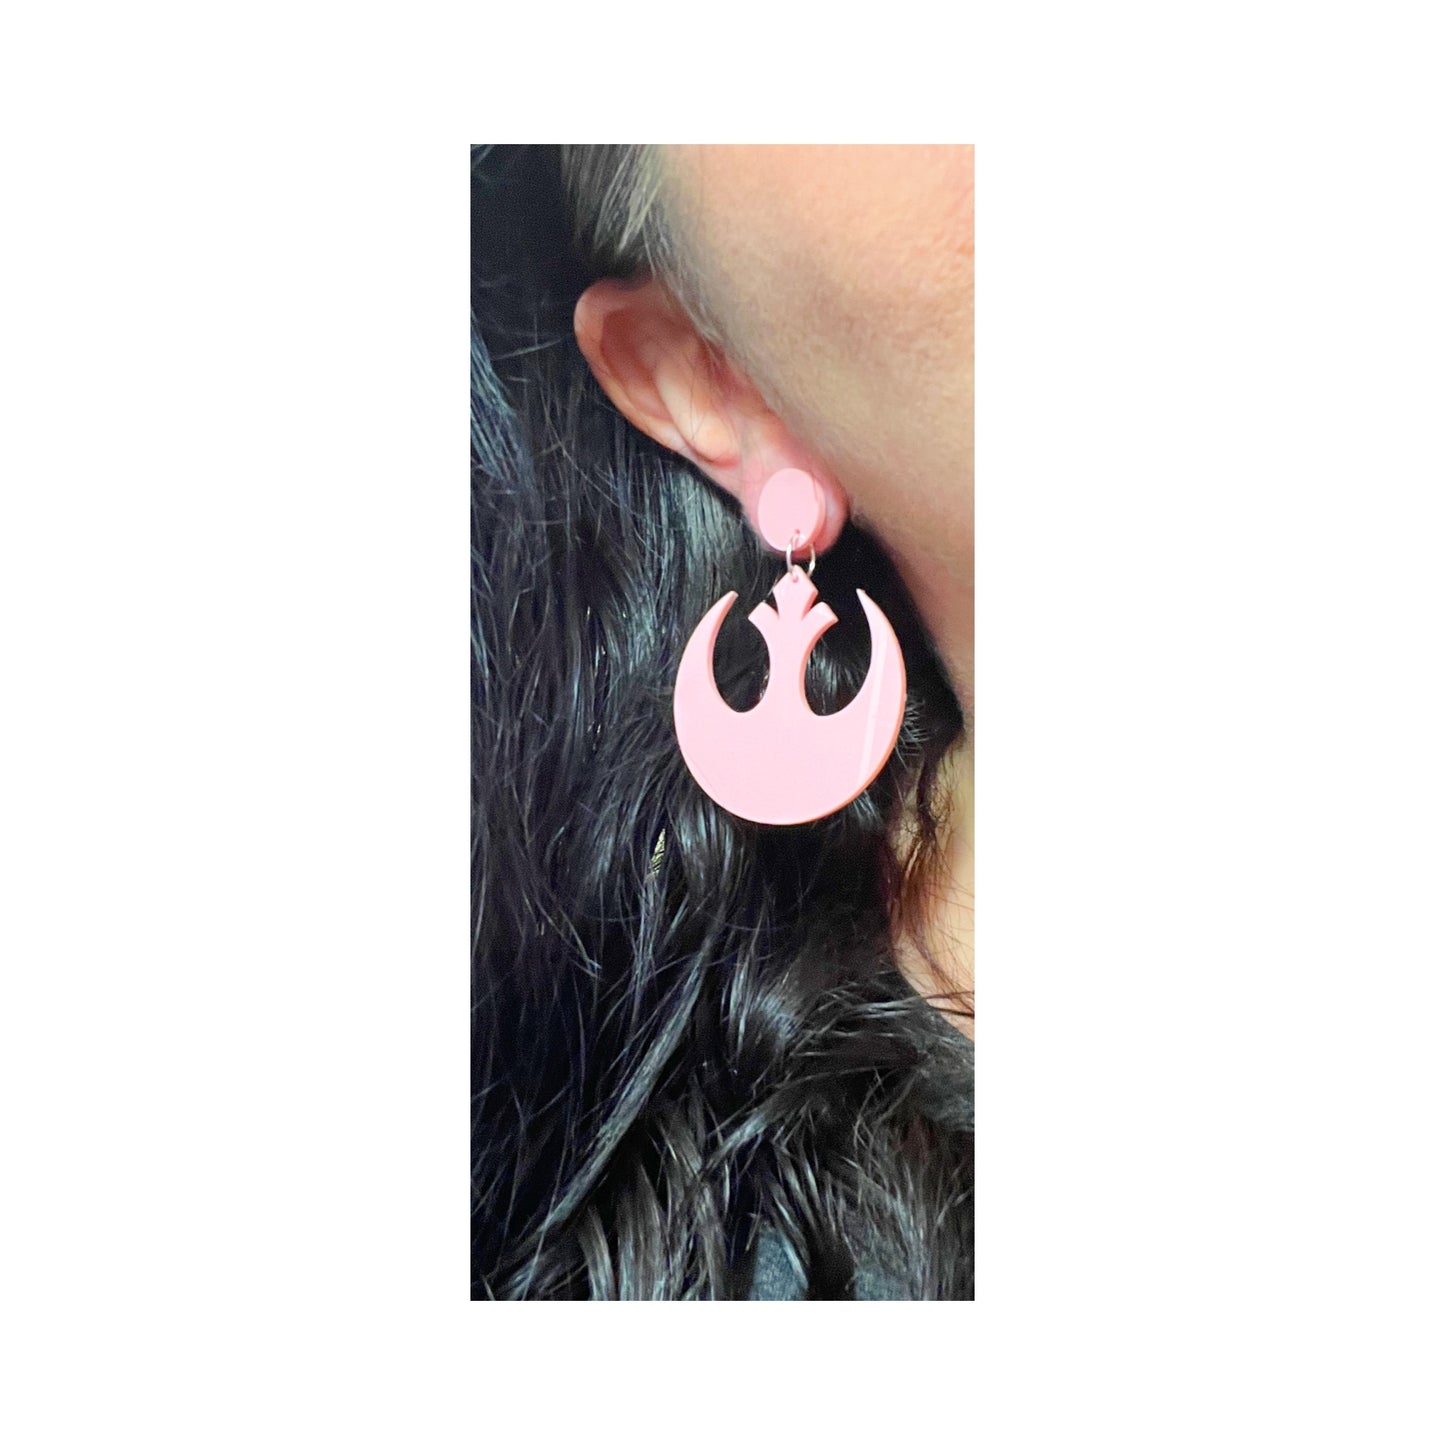 Pastel Pink Rebel Alliance Acrylic Drop Earrings